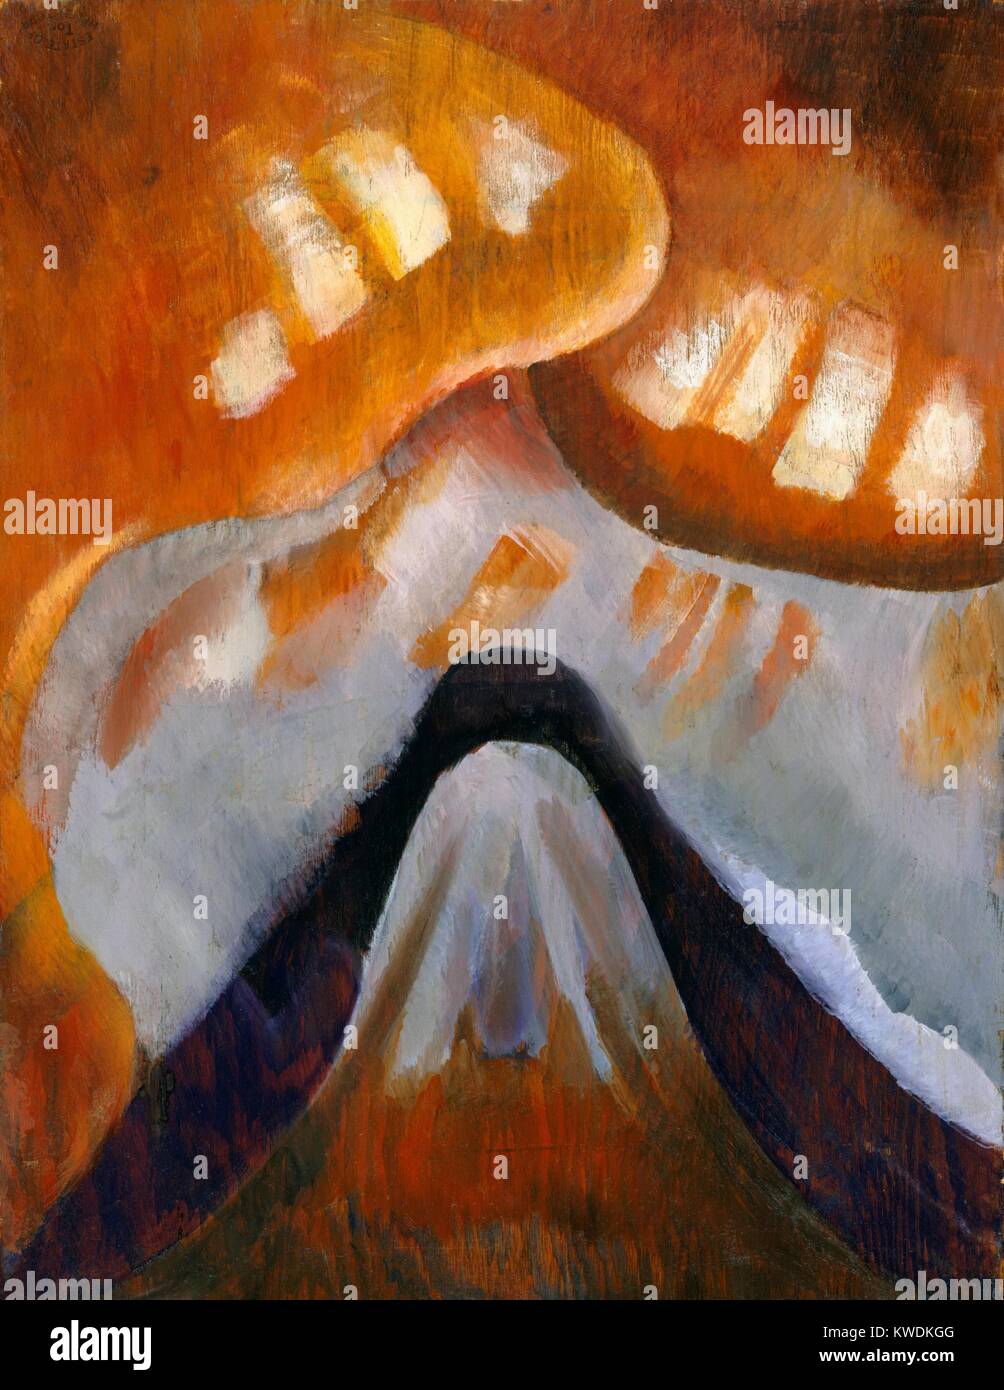 Montagne ET CIEL, par Arthur Dove, 1925, American peinture, huile sur panneau de bois. Résumé Le paysage est peint de façon spectaculaire avec nuages orange (BSLOC 2017 7 80) Banque D'Images